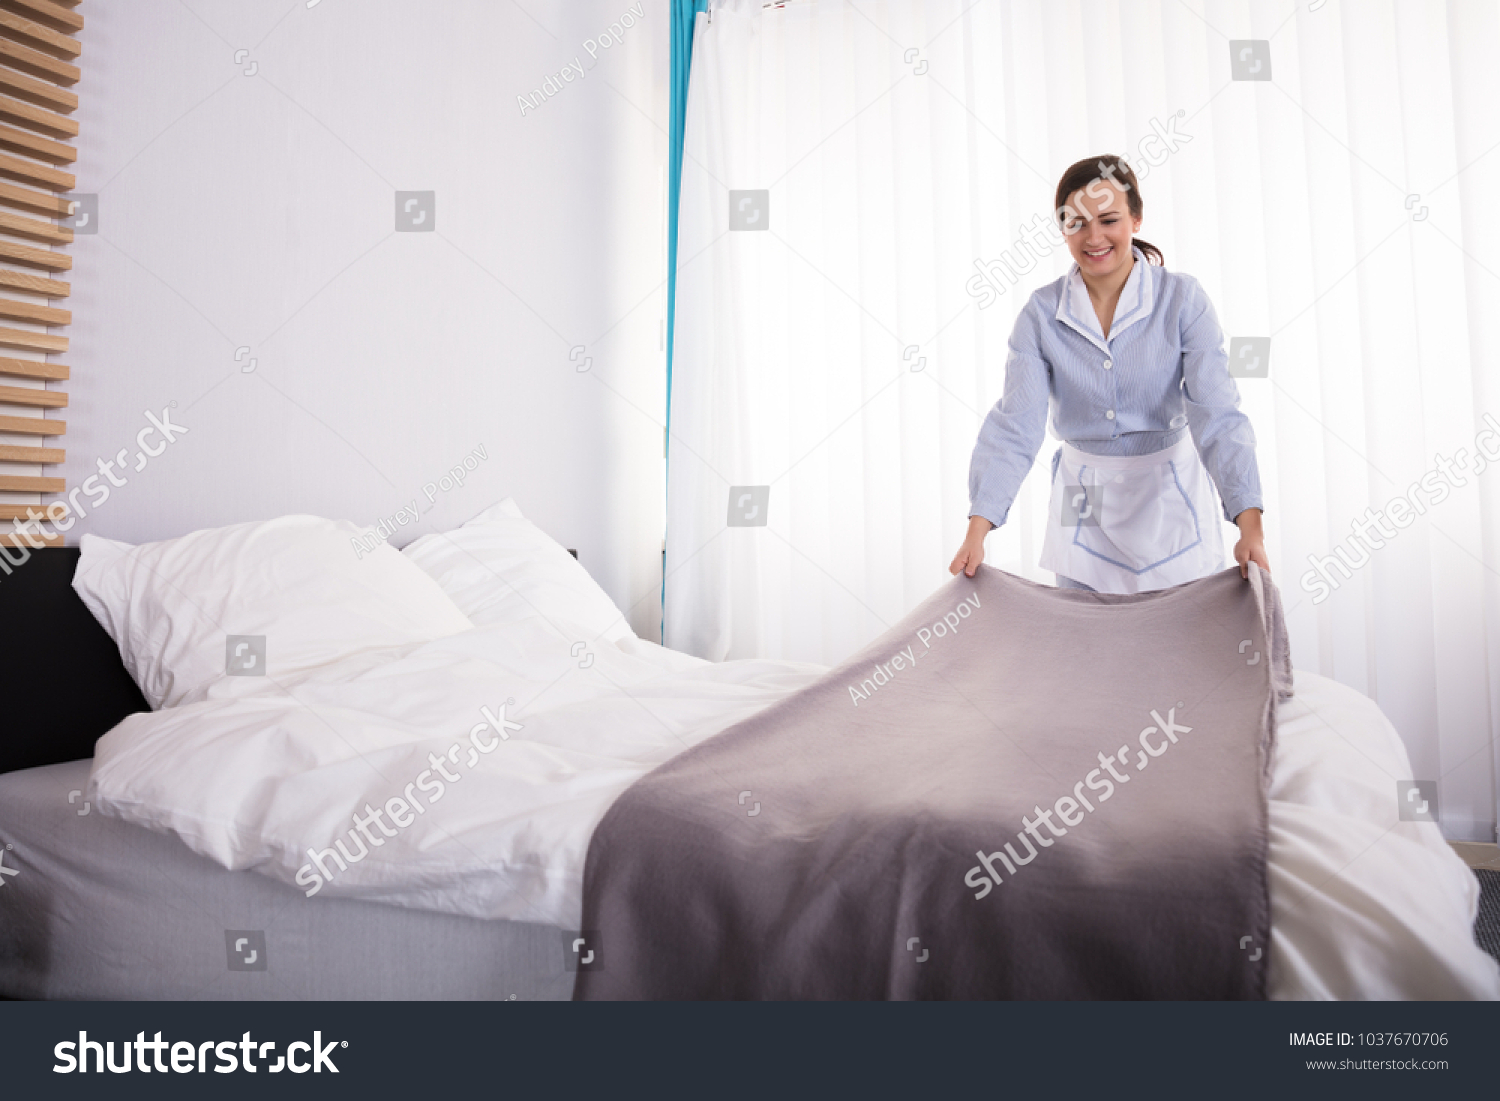 Горничная застилает кровать в гостинице